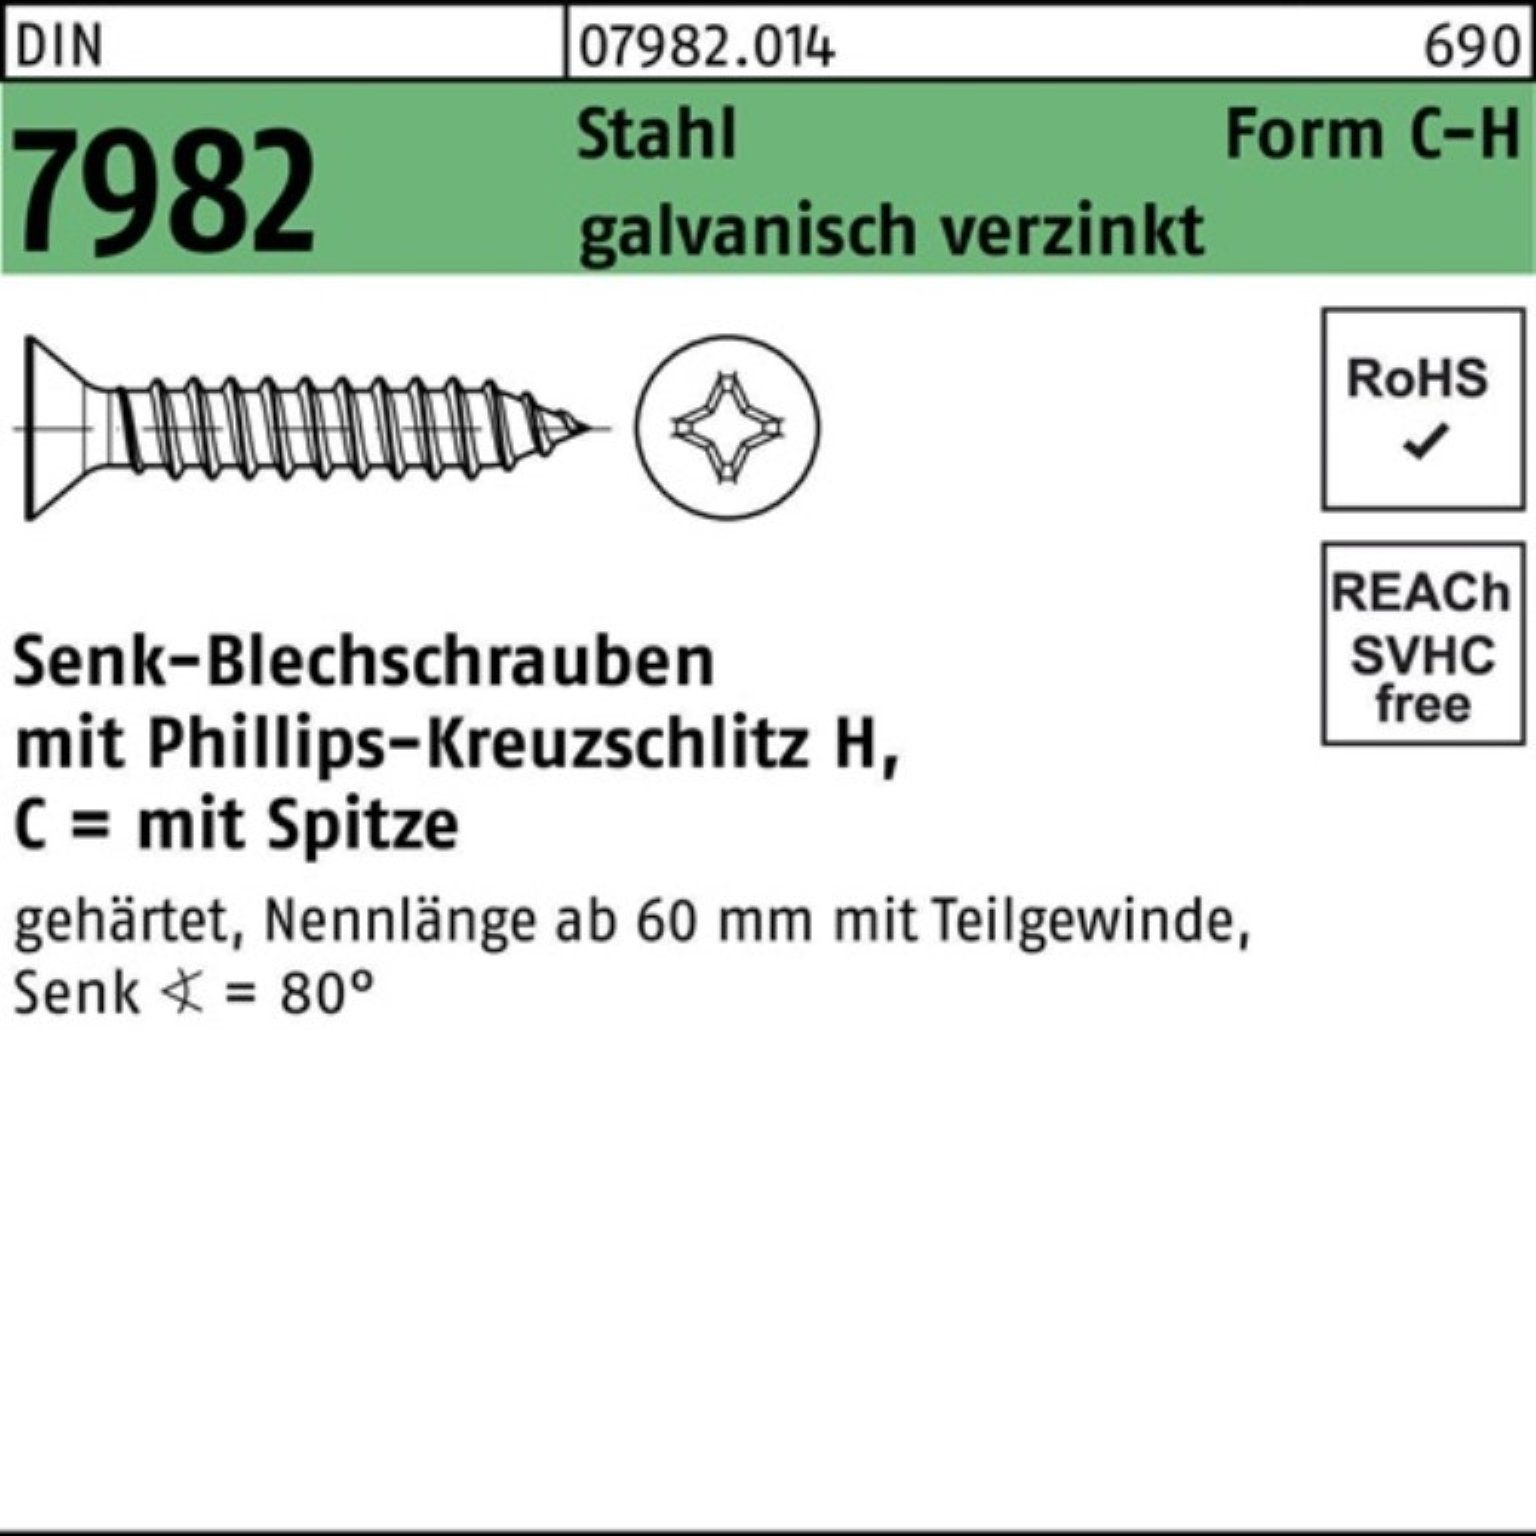 Schraube Reyher 500er 4,8x9,5-H PH/Spitze 7982 DIN galv Stahl C Senkblechschraube Pack